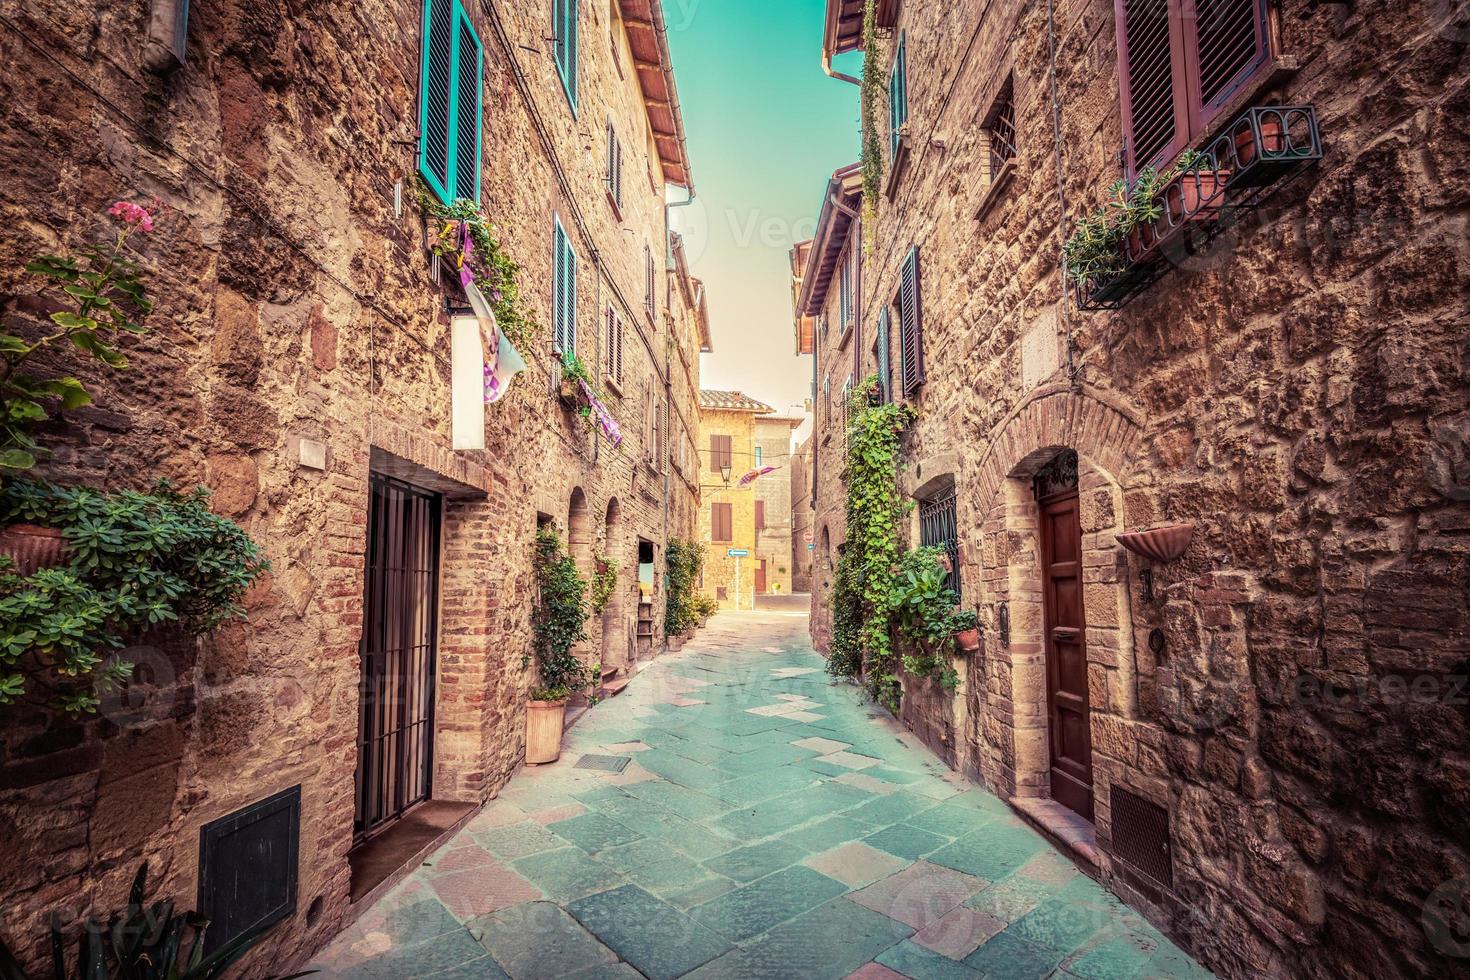 Gasse in einer alten italienischen Stadt Pienza. toskana, italien. Jahrgang foto